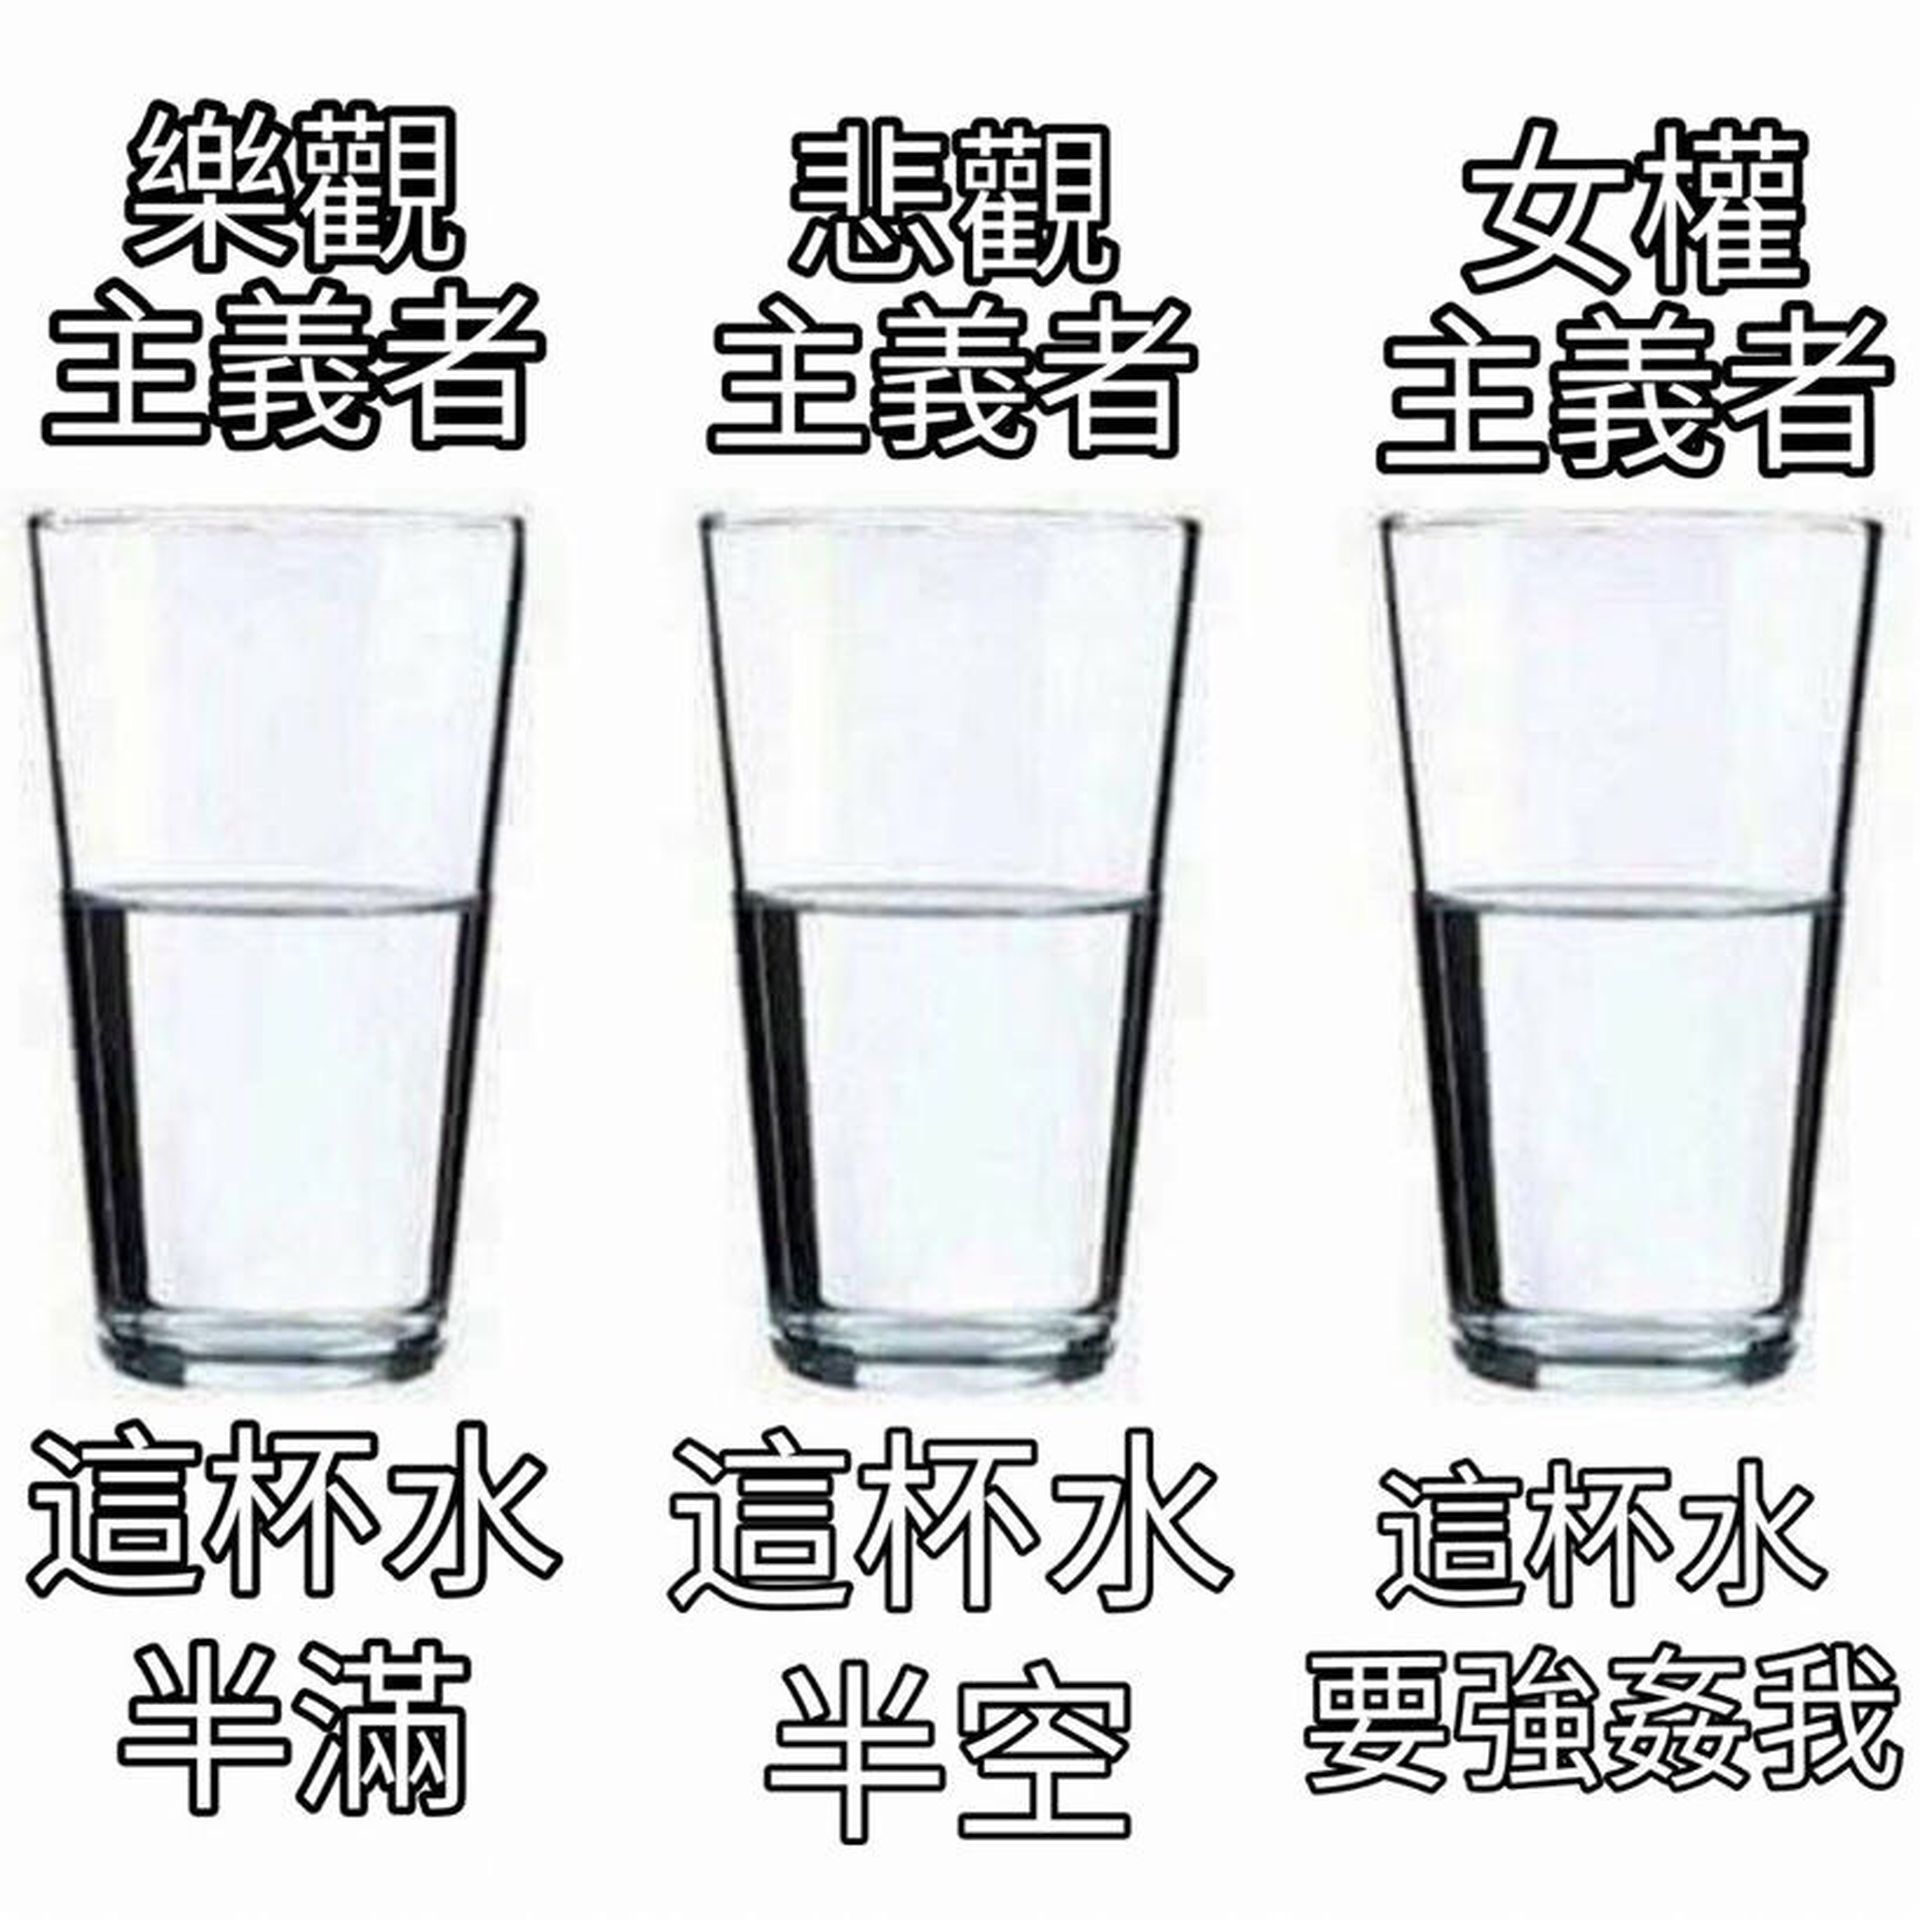 这杯水要强奸我 女性主义的论述困境 多维新闻 台湾